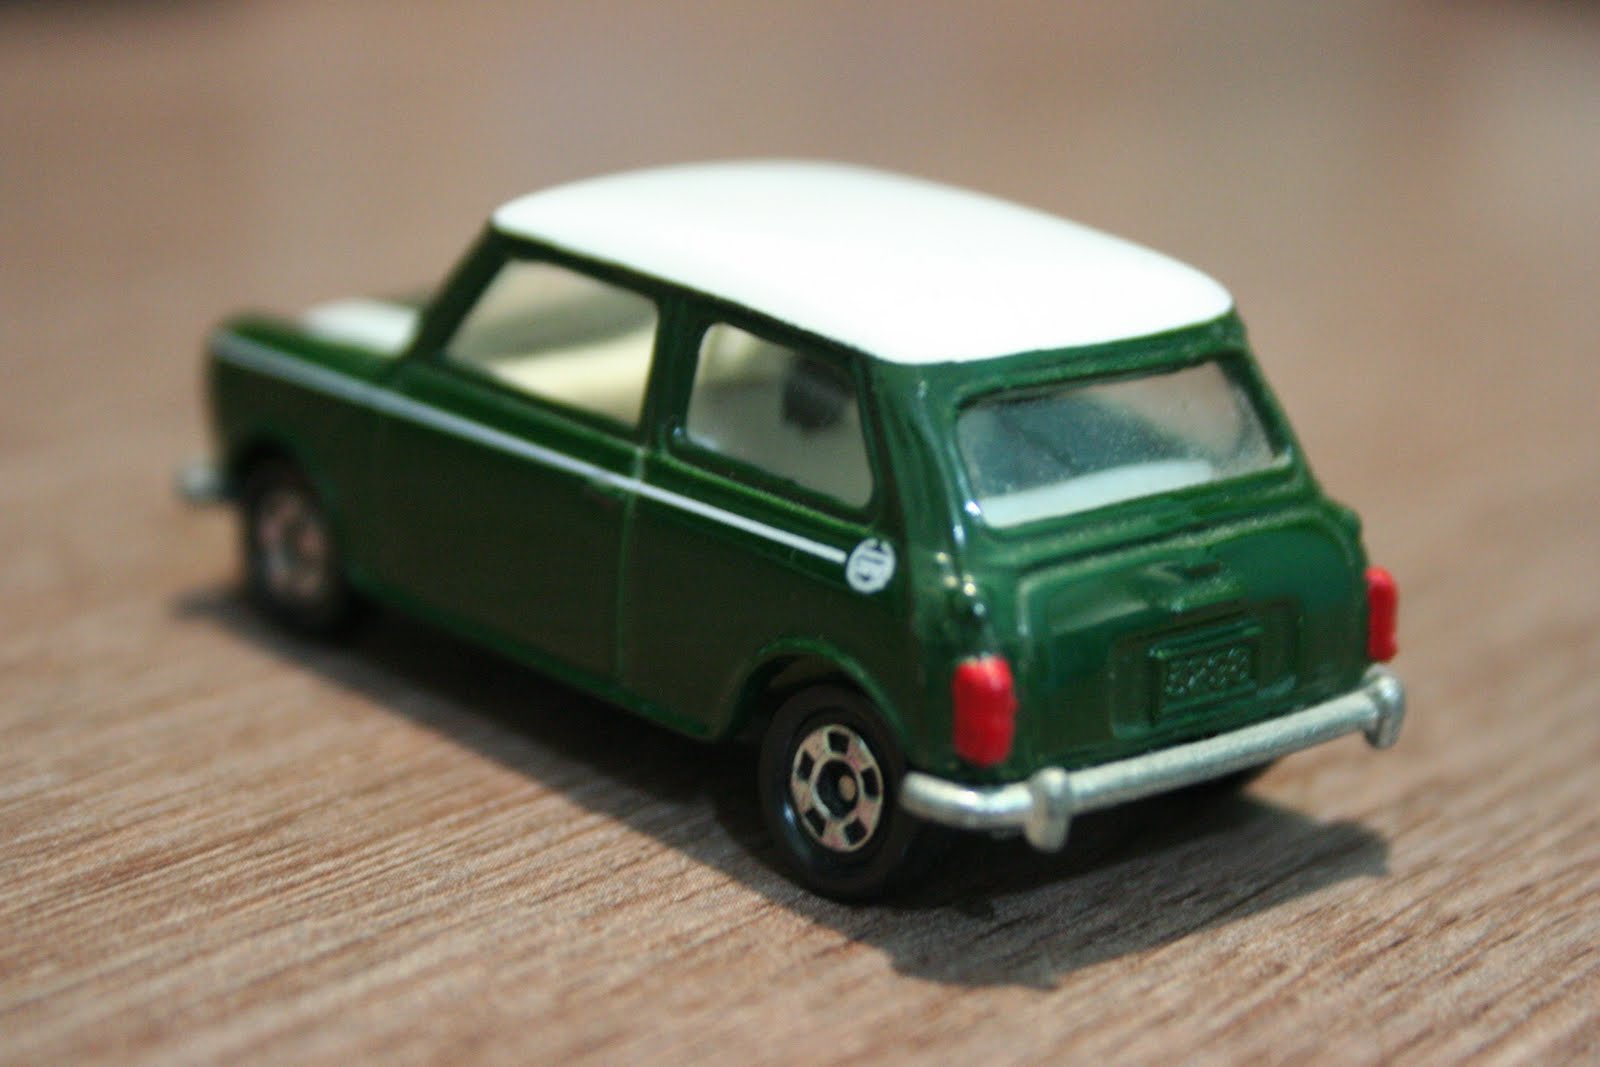 1/64 Die-cast Toy Cars....: Tomica - Mini Cooper (Regular)